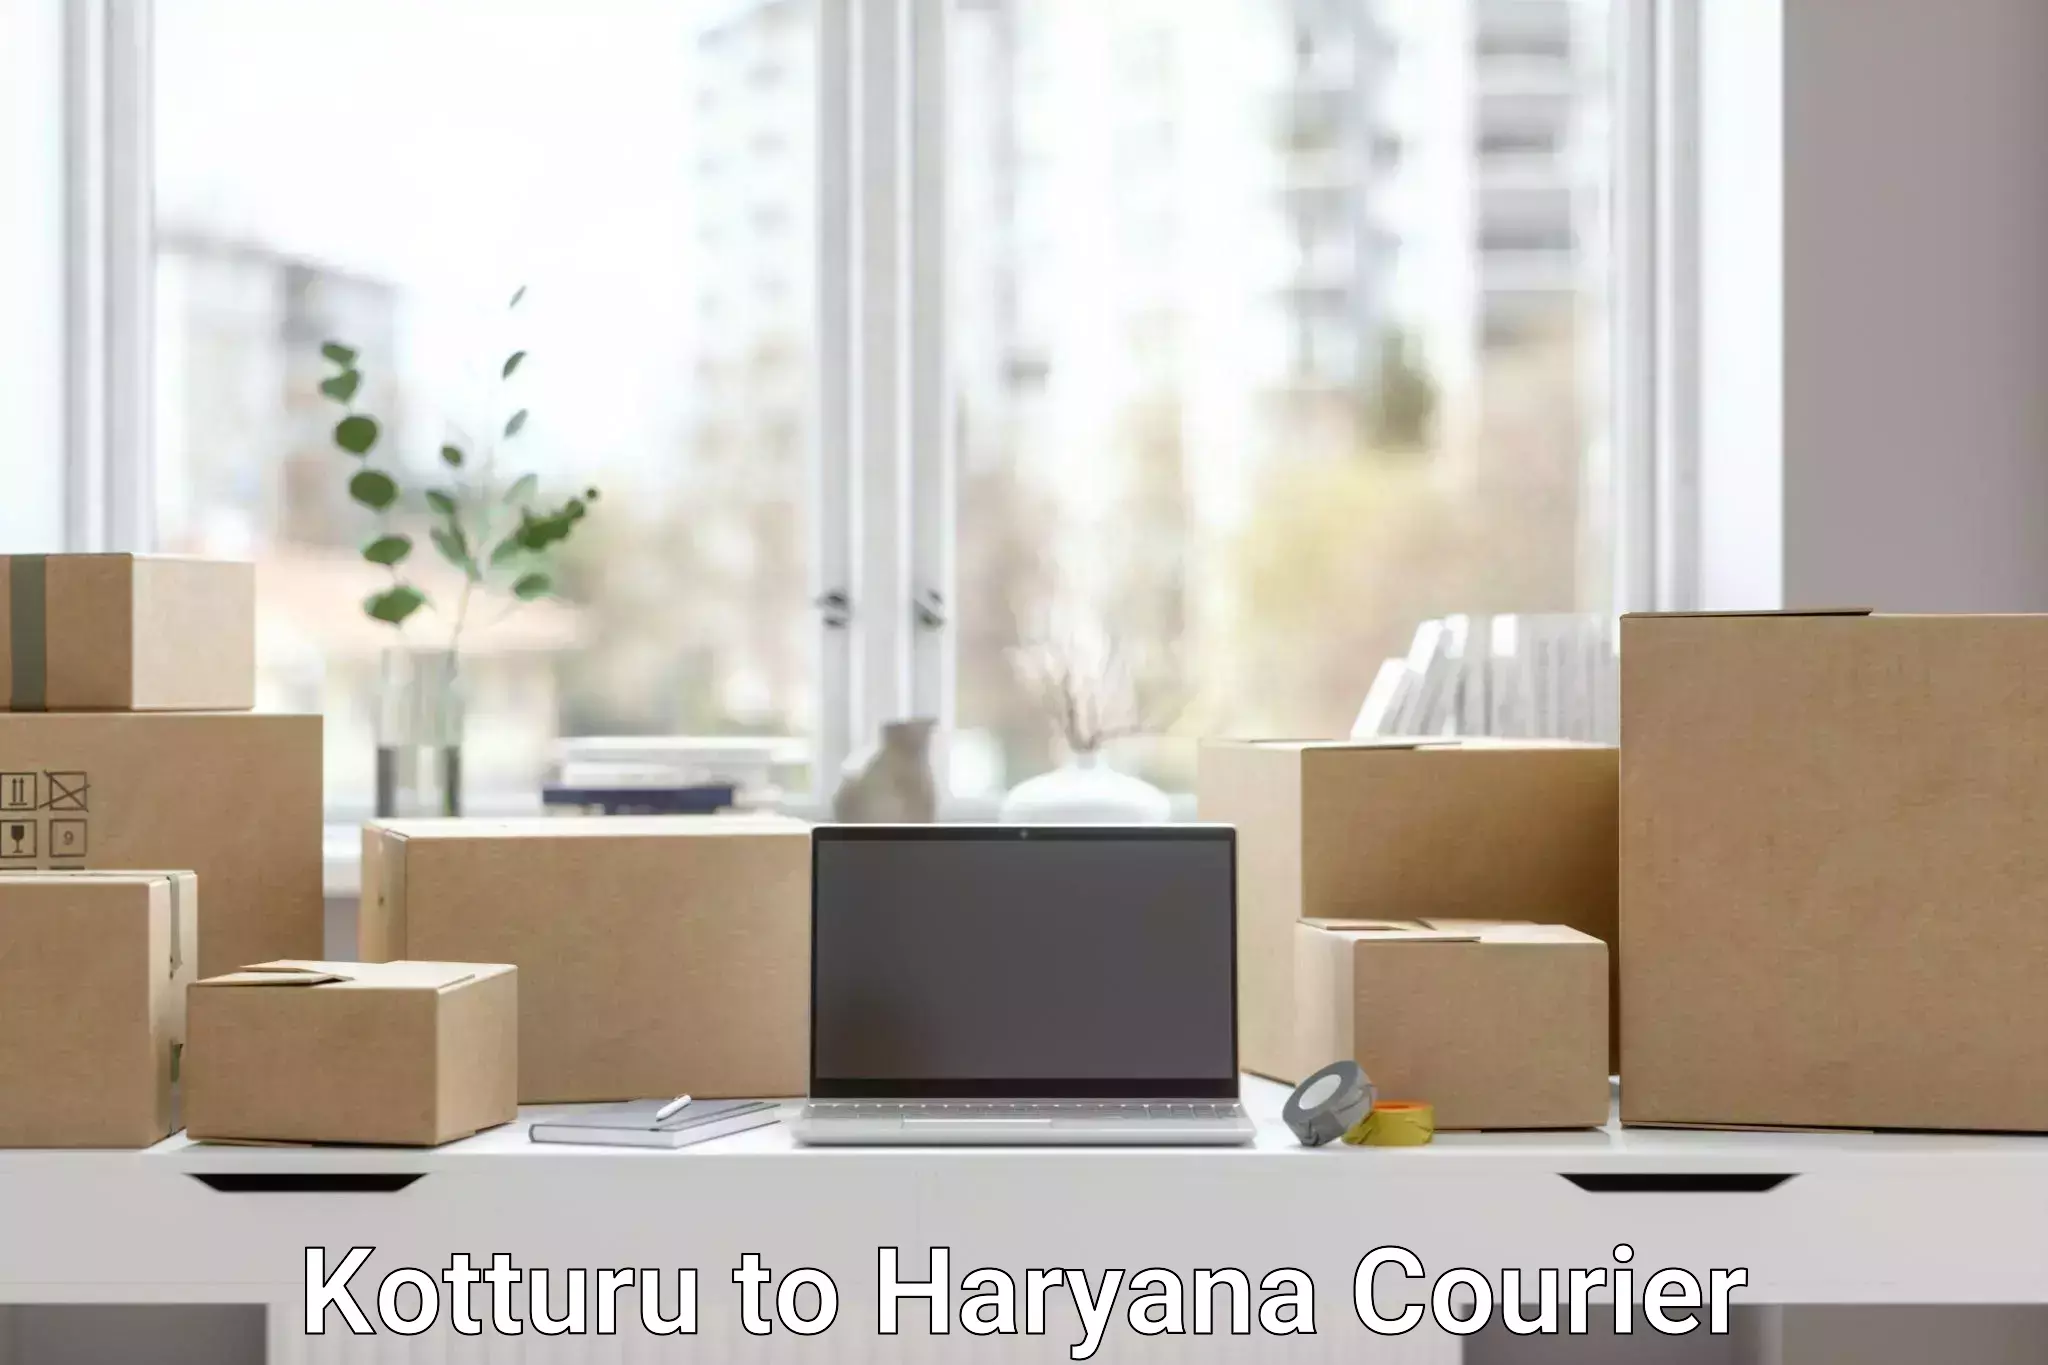 Secure package delivery in Kotturu to Bilaspur Haryana